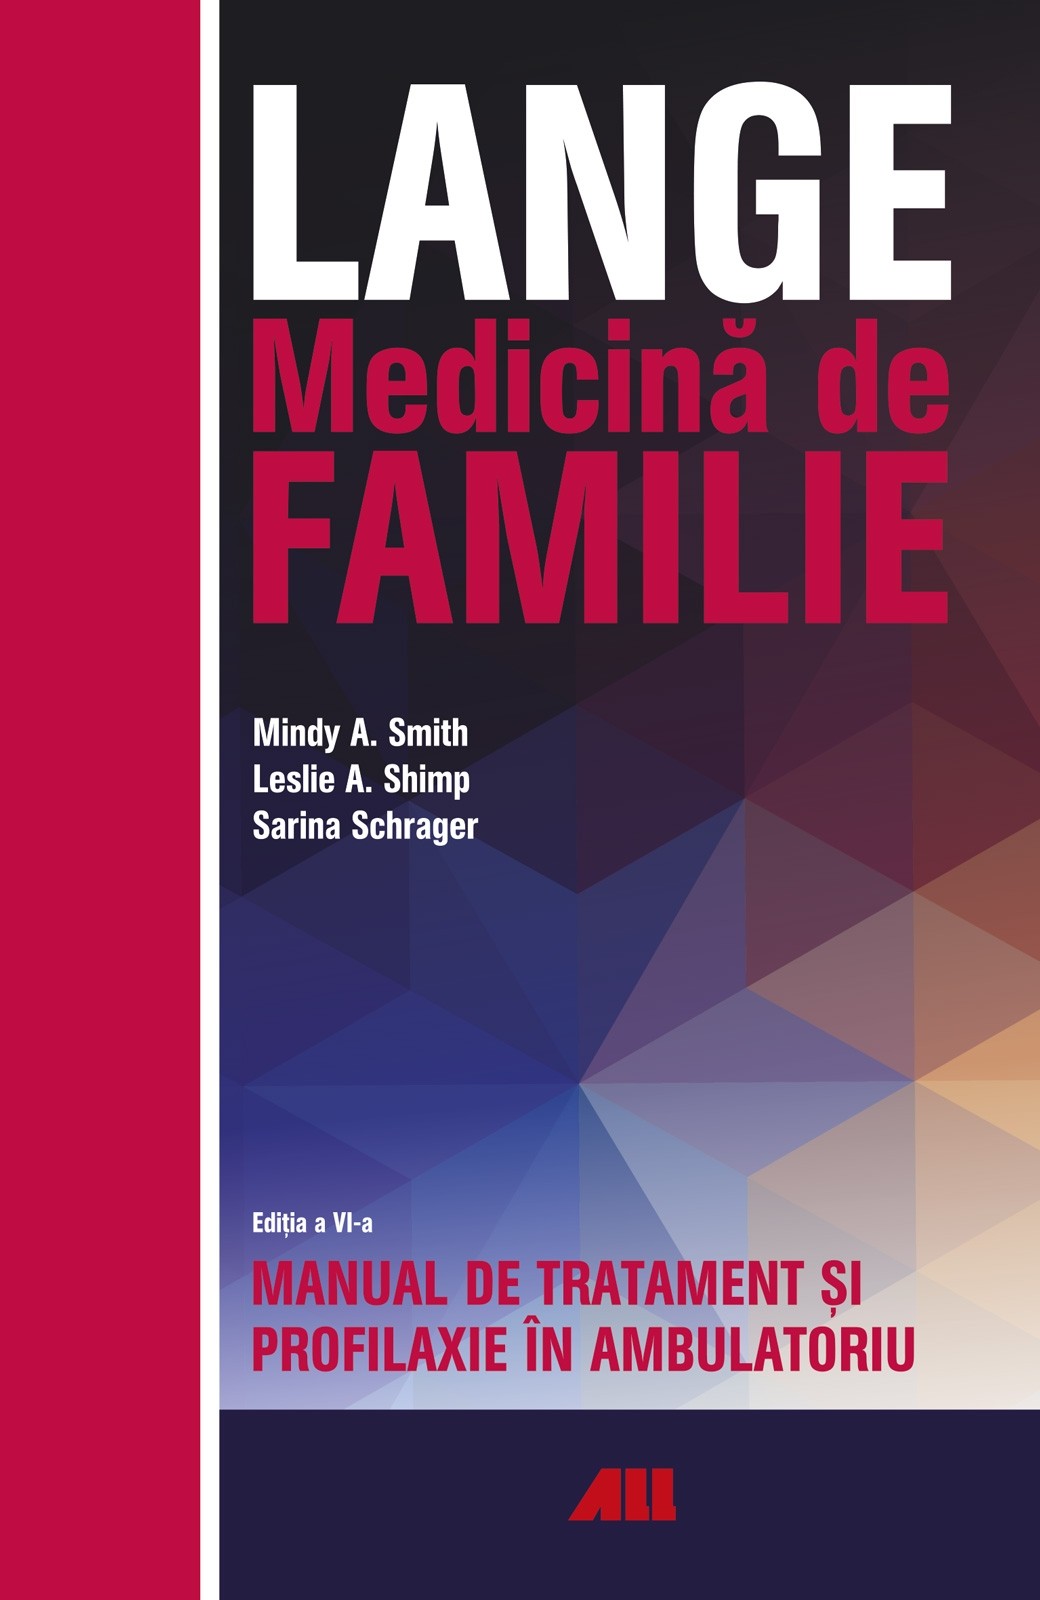 LANGE. Medicina de familie | Leslie A. Shimp, Mindy A. Smith, Sarina Schrager ALL imagine 2021